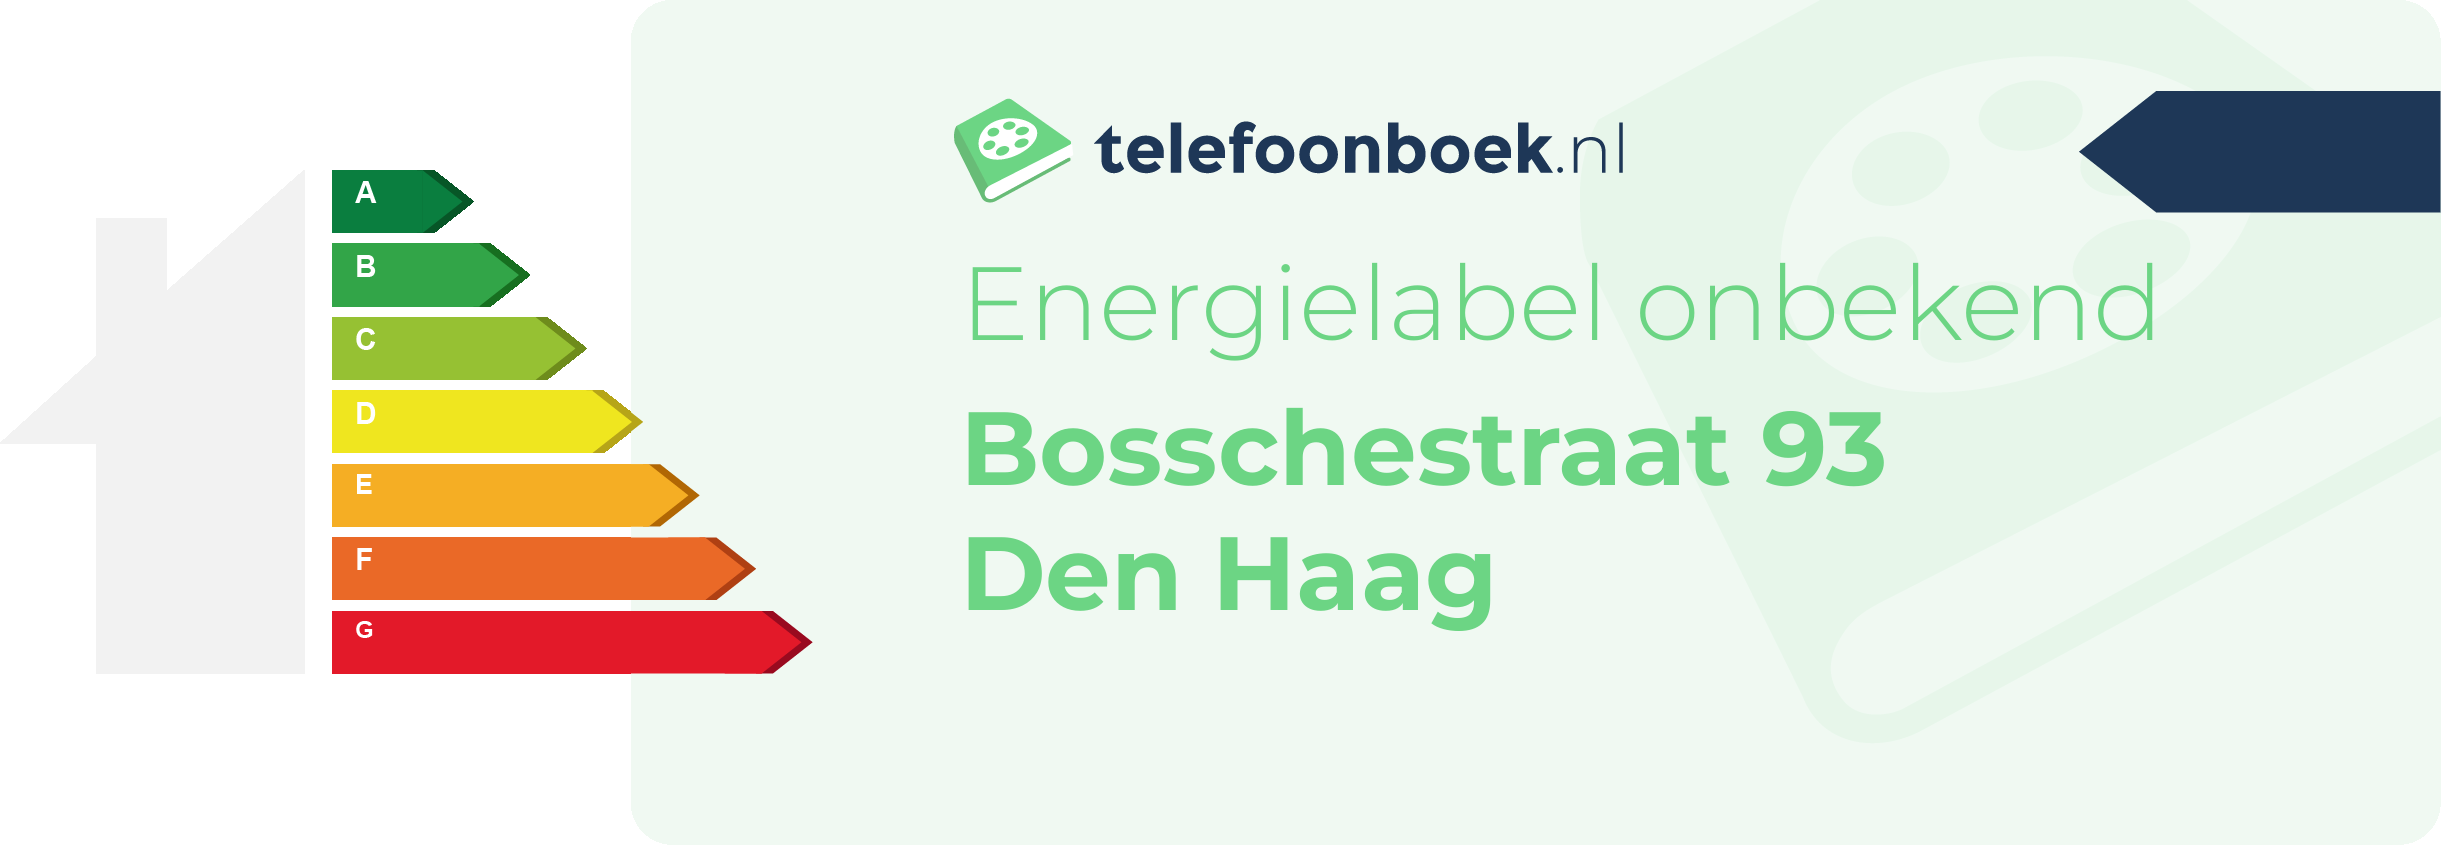 Energielabel Bosschestraat 93 Den Haag